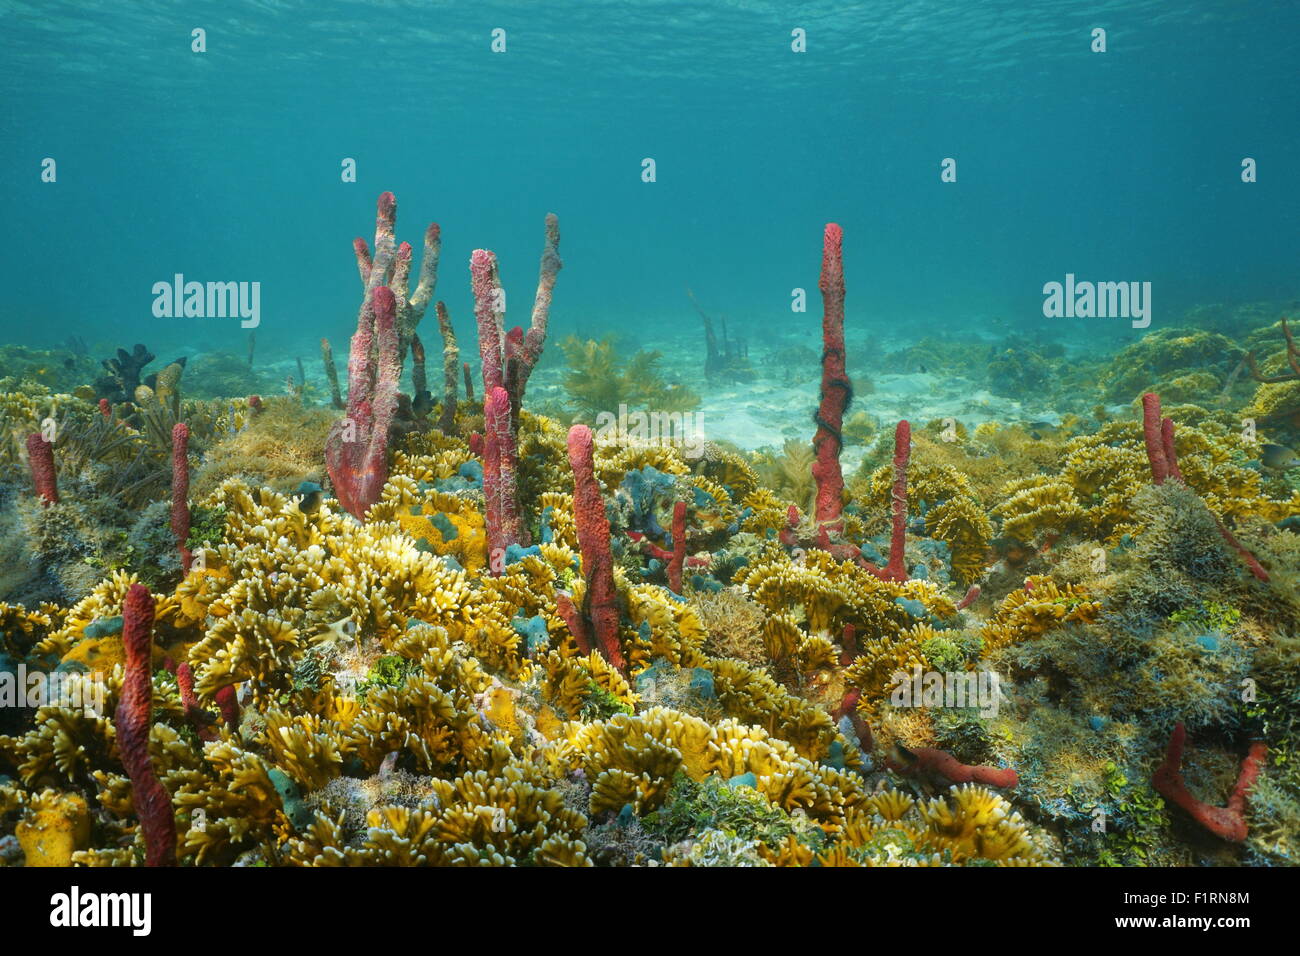 Paysage sous-marin, fond coloré composé d'éponges de mer et corail de feu, la mer des Caraïbes, l'Amérique centrale Banque D'Images